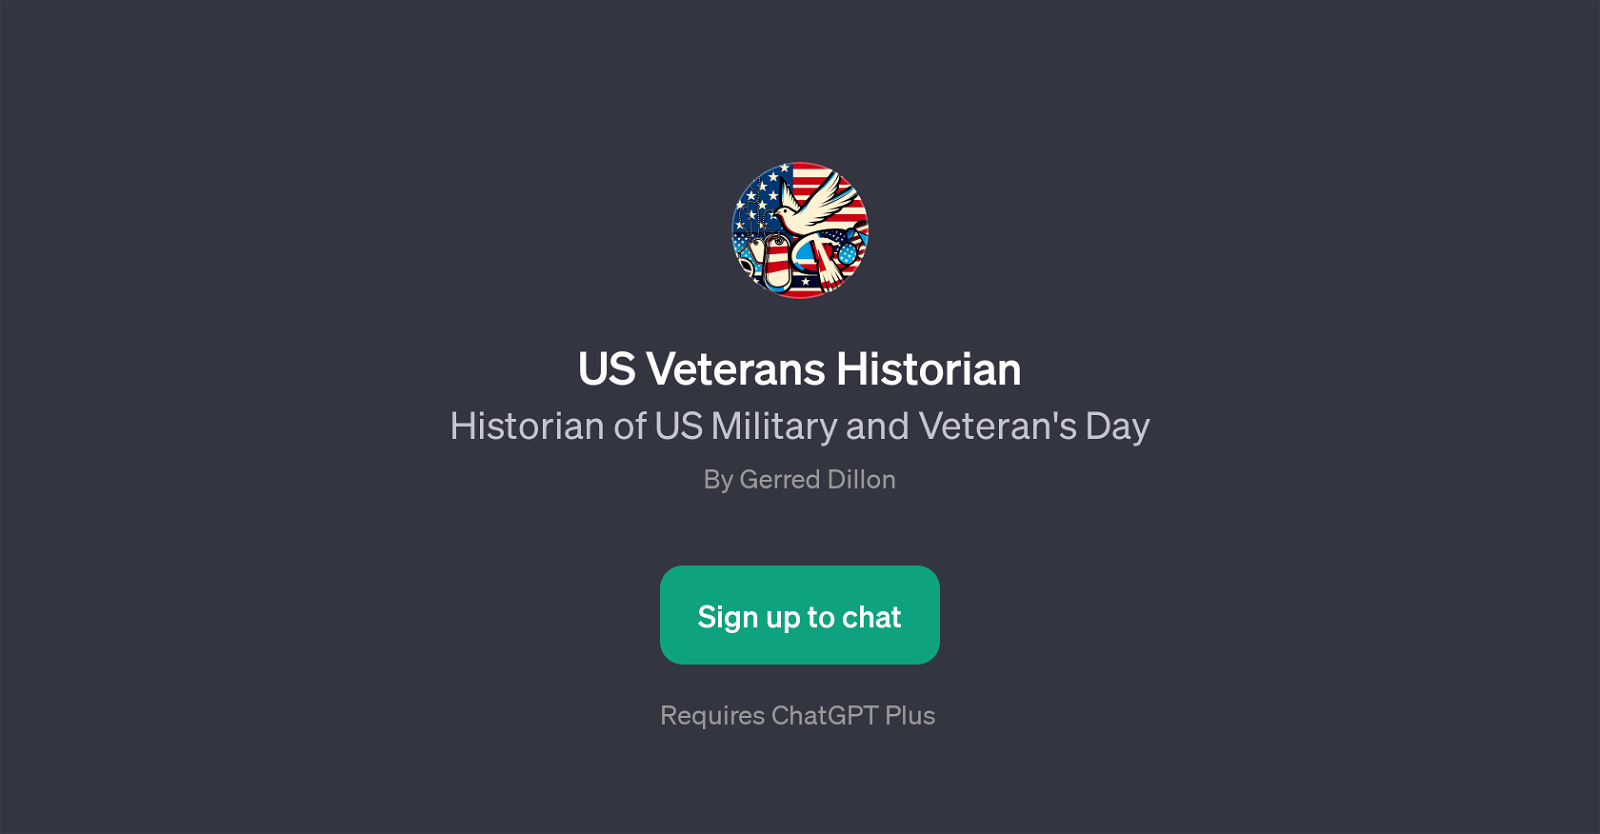 US Veterans Historian website